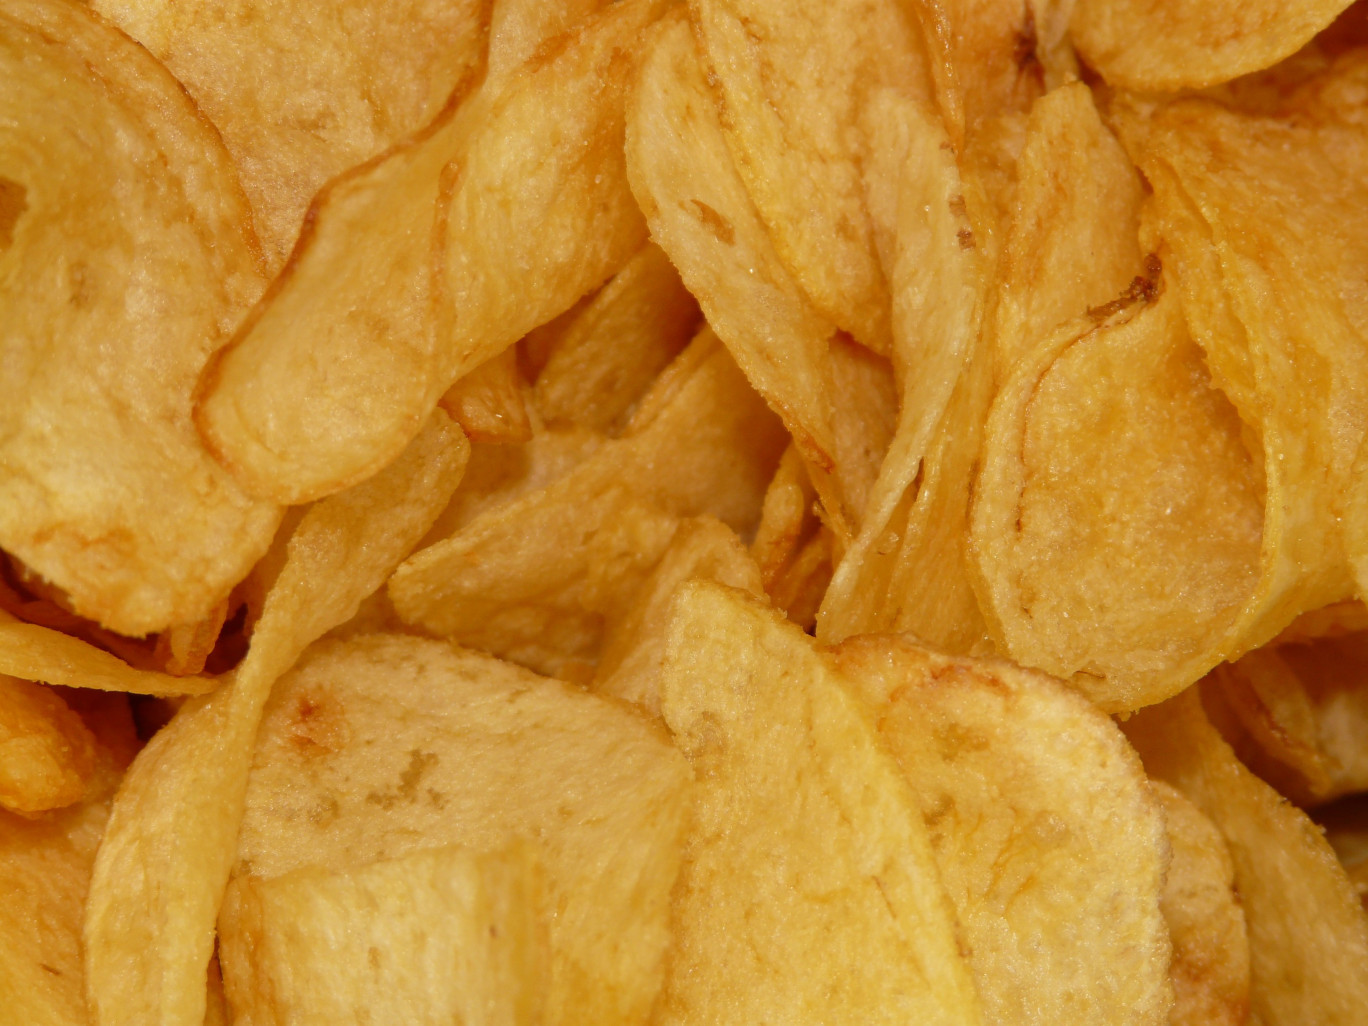 Un Français consomme un kilogramme de chips chaque année. ©Pixabay